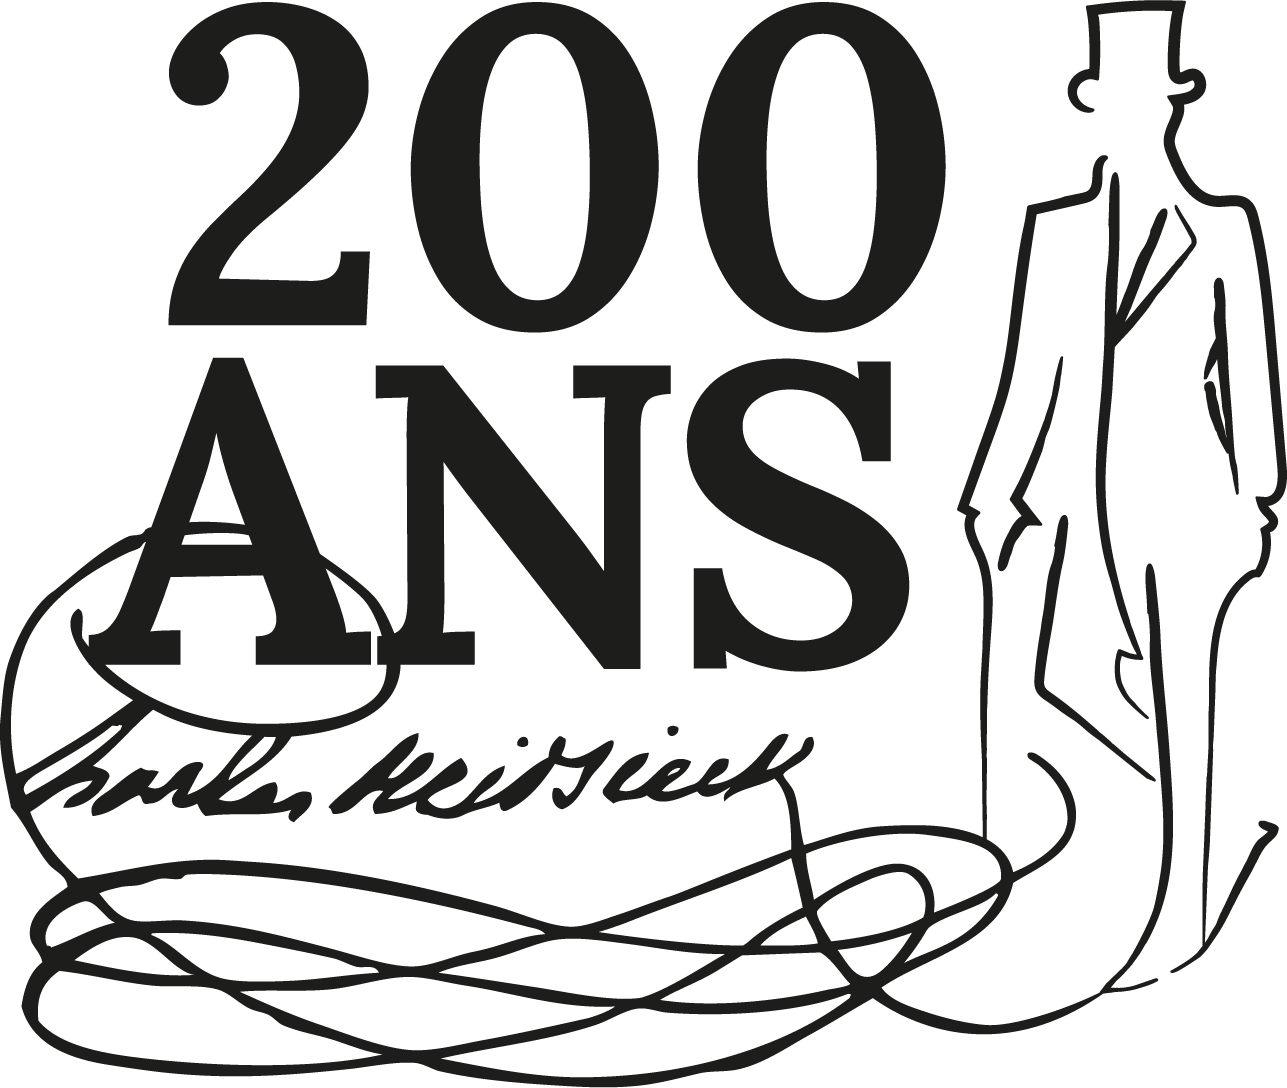 Logo Champagne Charles Heidsieck 200 years